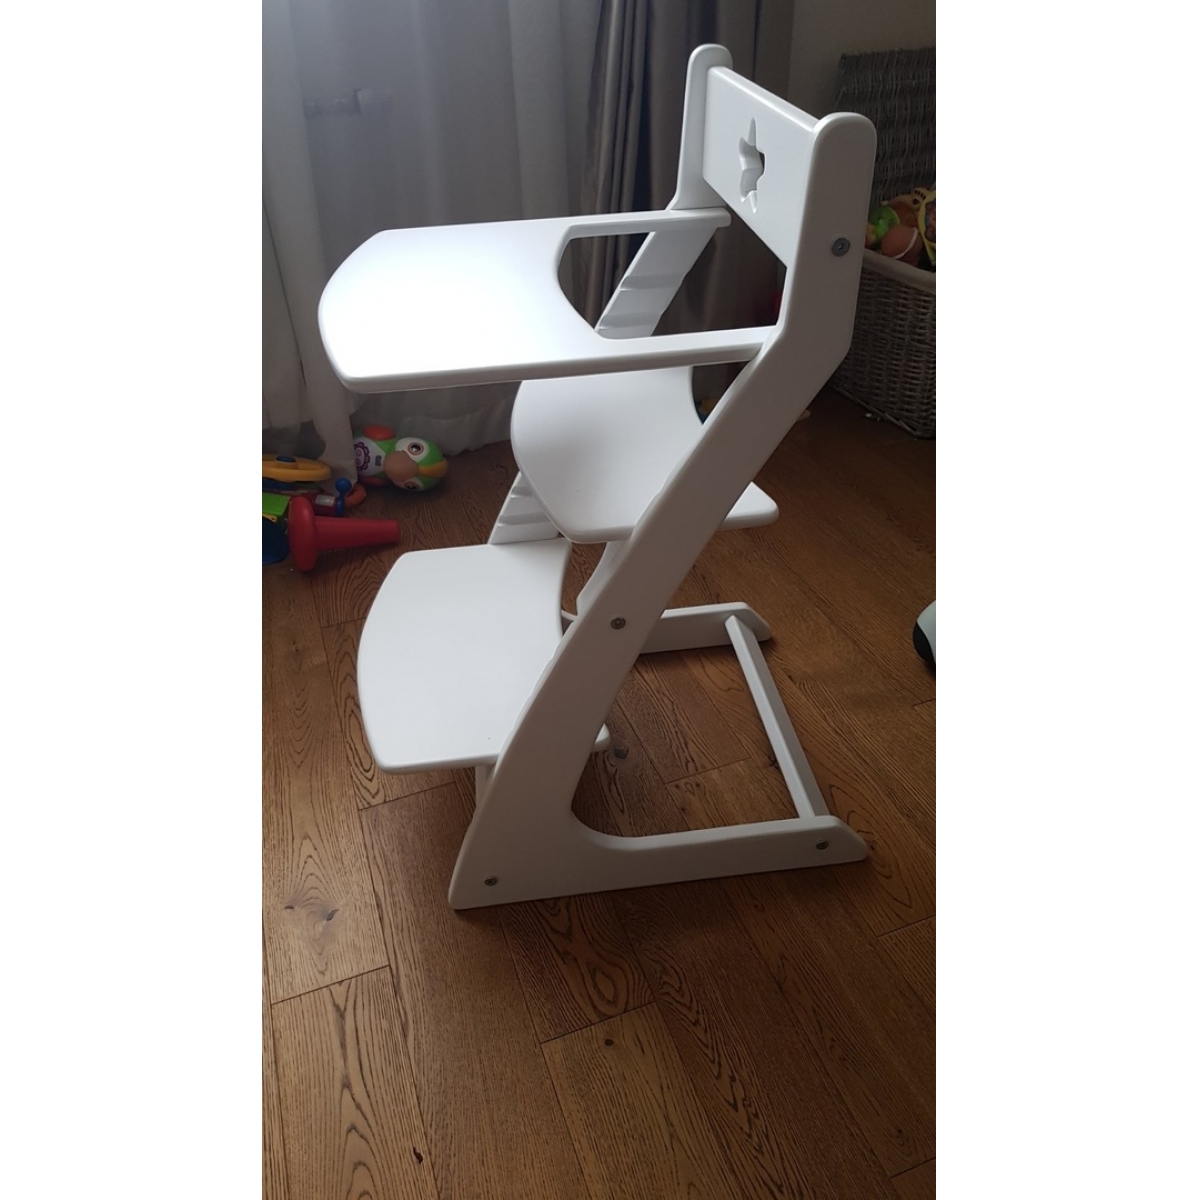 Детский растущий регулируемый стул Ростик/Rostik со столиком (белый)